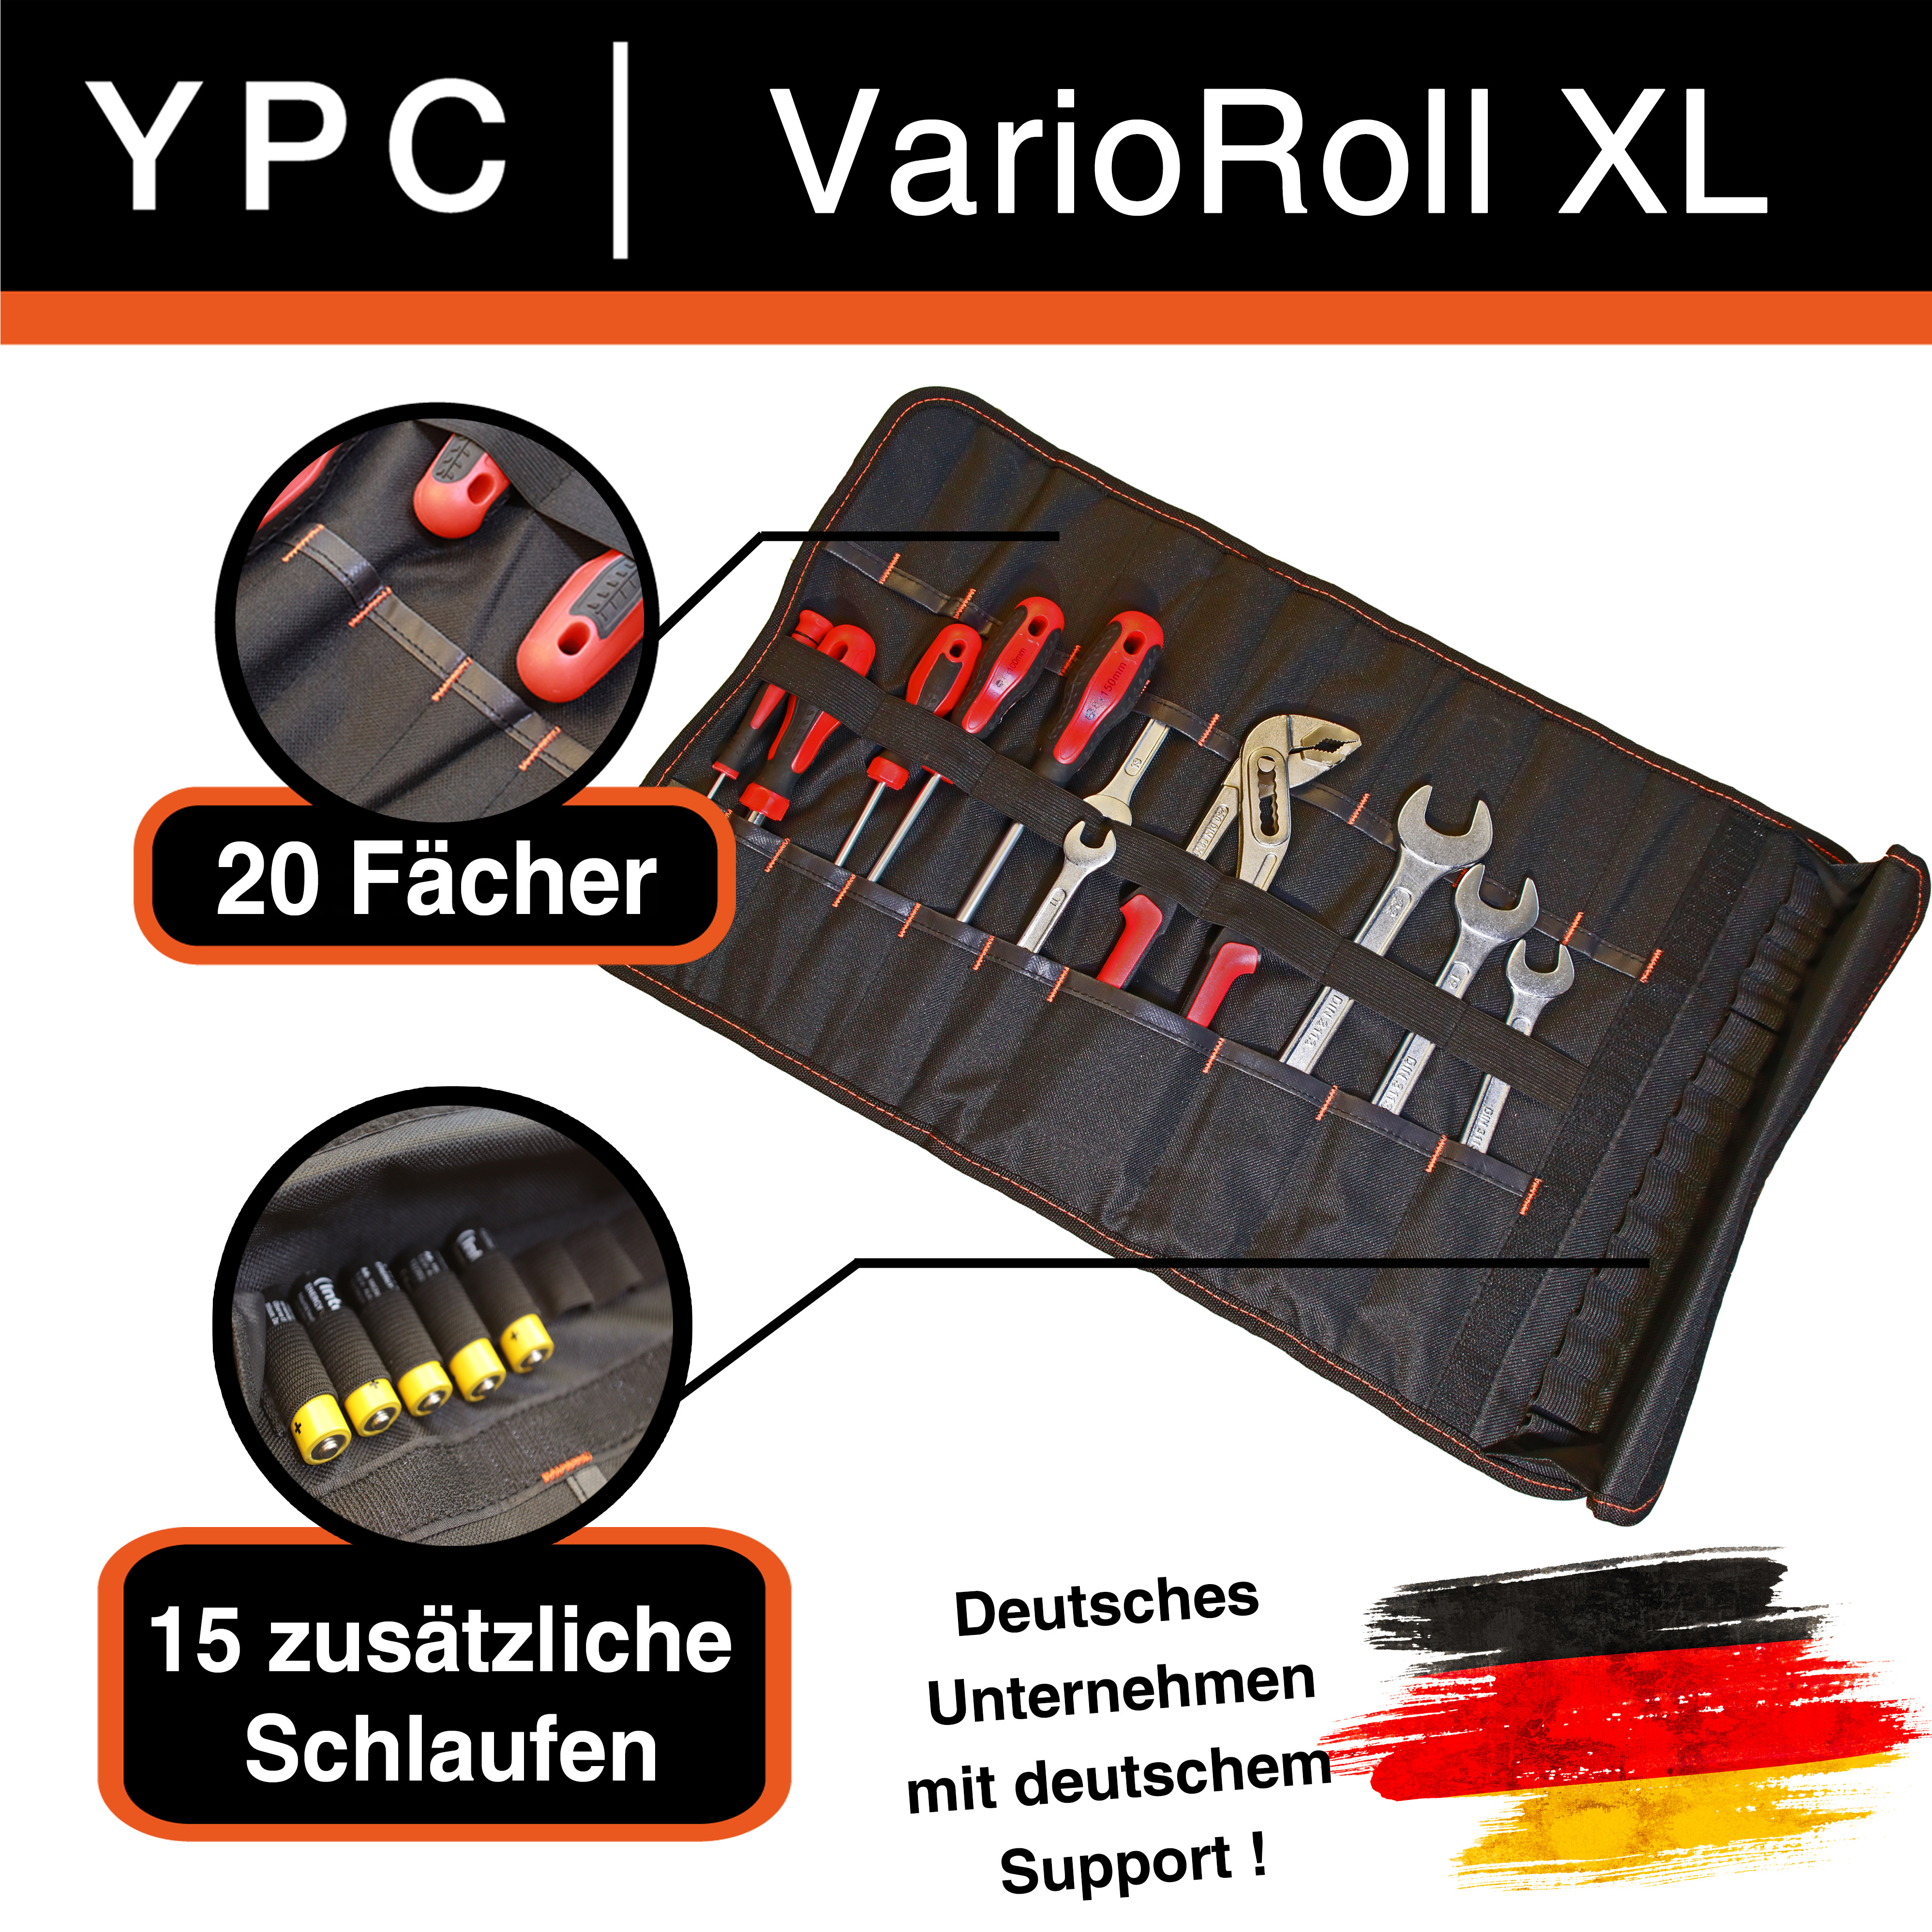 "VarioRoll XL" Werkzeug Rolltasche 56x34cm, 20 Steckfächer und 15 Halteschlaufen, Grau-Schwarz